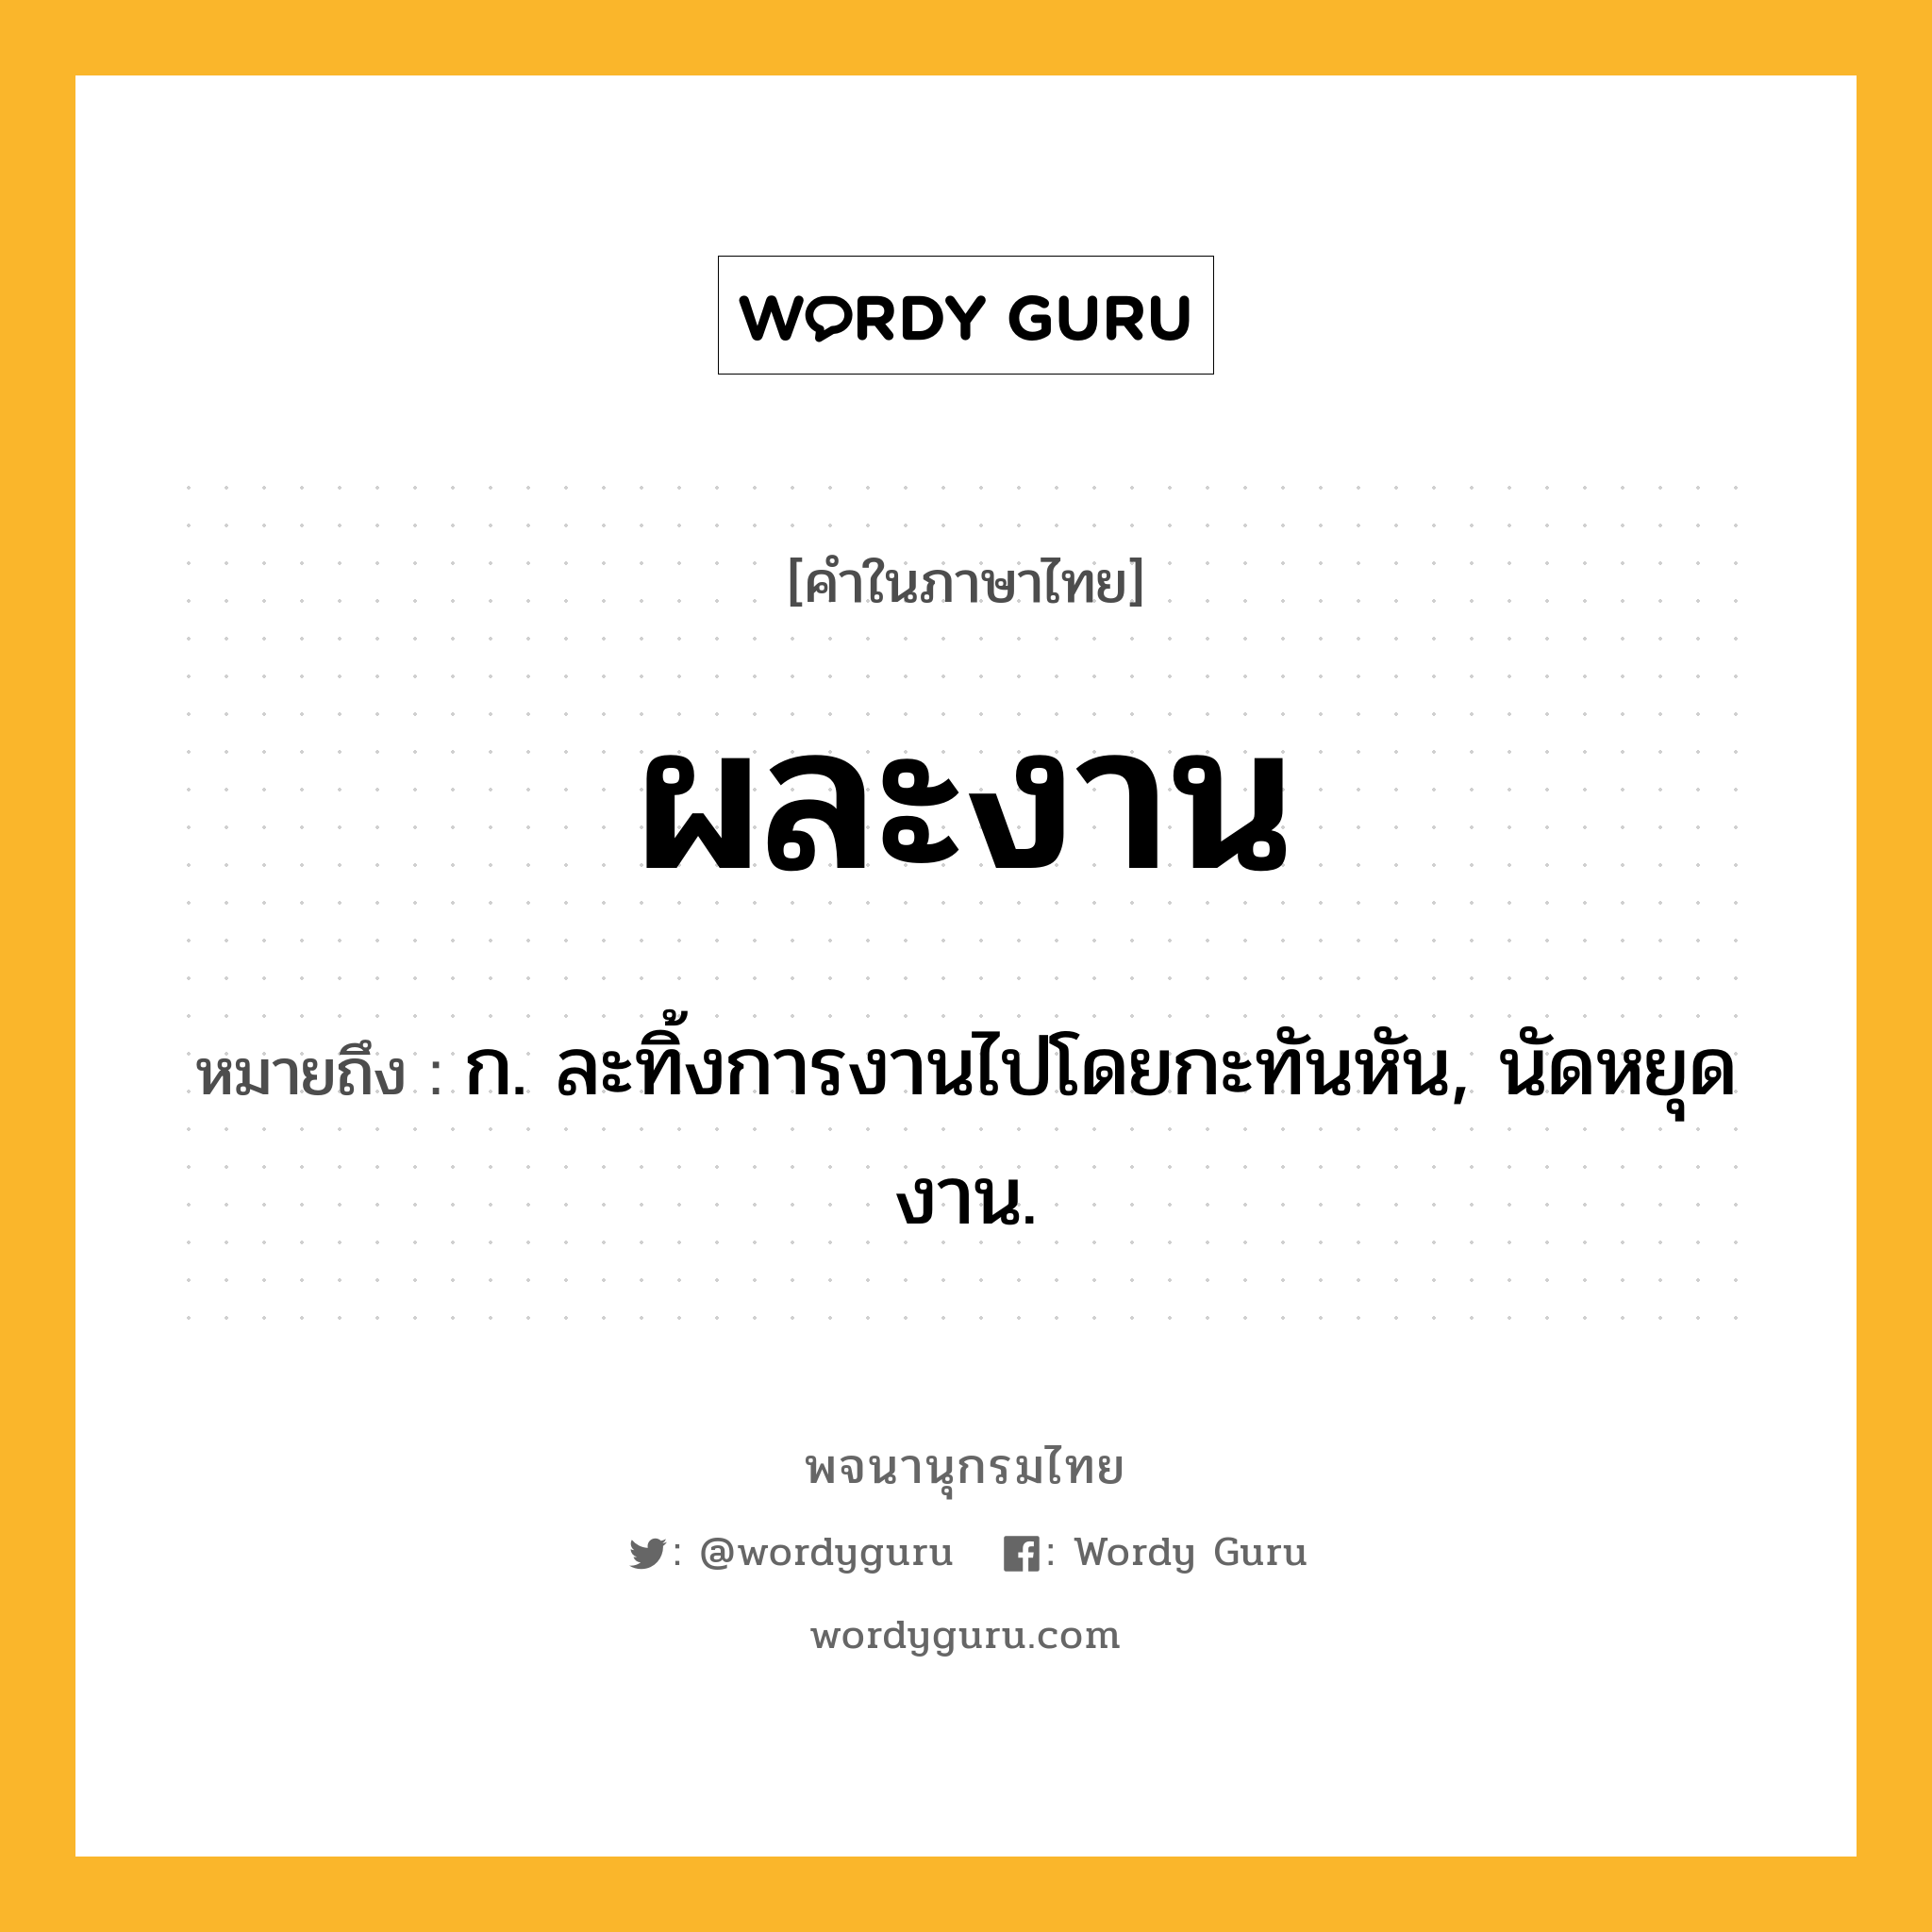 ผละงาน ความหมาย หมายถึงอะไร?, คำในภาษาไทย ผละงาน หมายถึง ก. ละทิ้งการงานไปโดยกะทันหัน, นัดหยุดงาน.